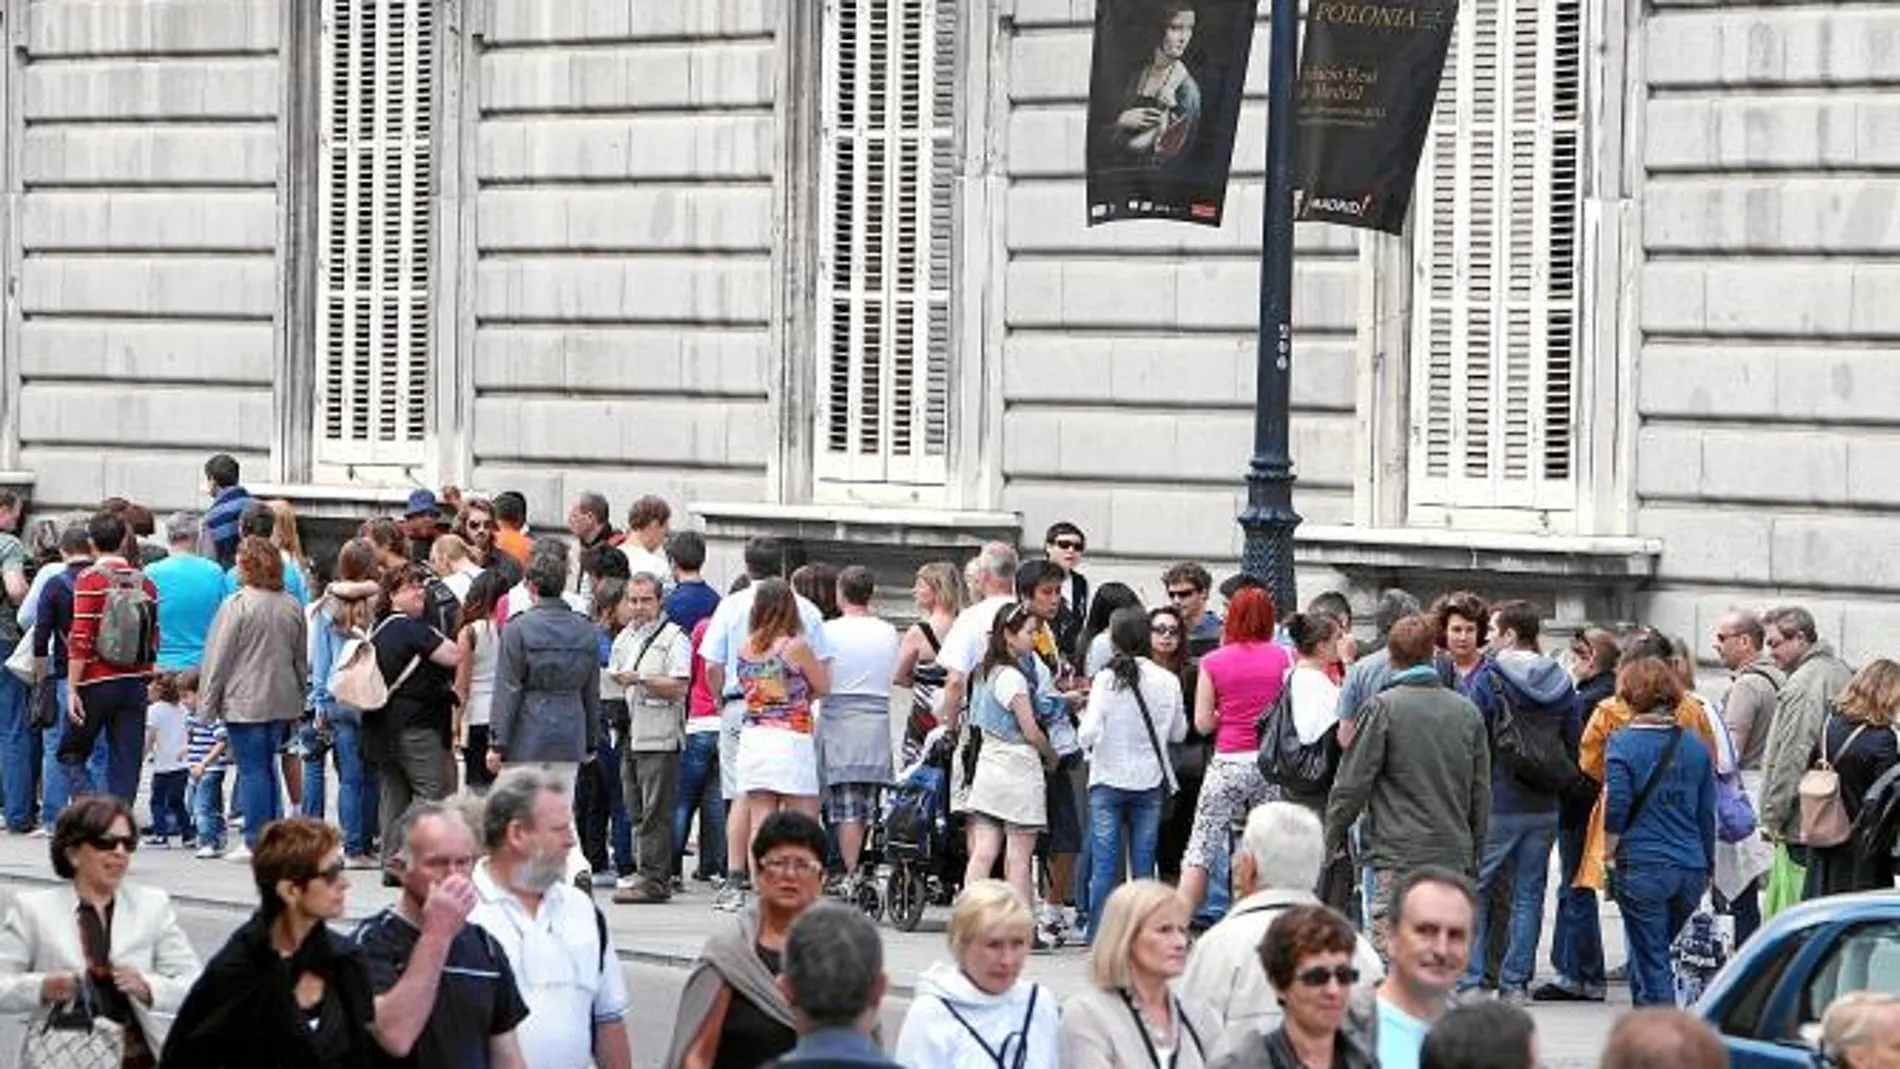 La llegada a Madrid de La «Dama del armiño» de Leonardo da Vinci ha despertado una gran expectación. El público acudió desde el primer día al Palacio Real de Madrid para poder contemplarla, como puede observarse en la fotografía de al lado.